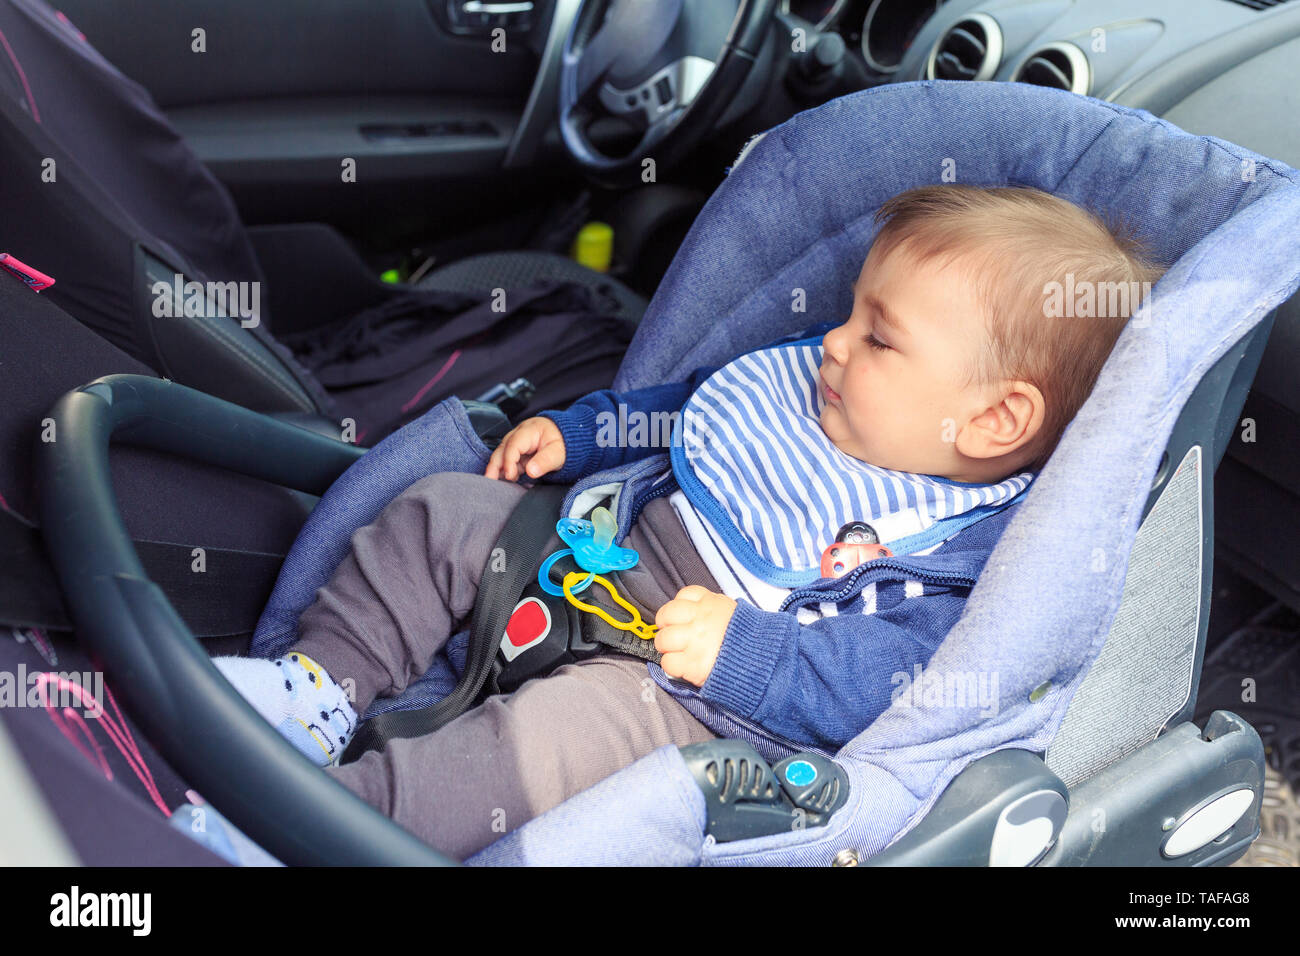 Süßes kleines Kind schlafen im Auto mit Sicherheitsgurt für Sicherheit  während der Reise befestigt Stockfotografie - Alamy